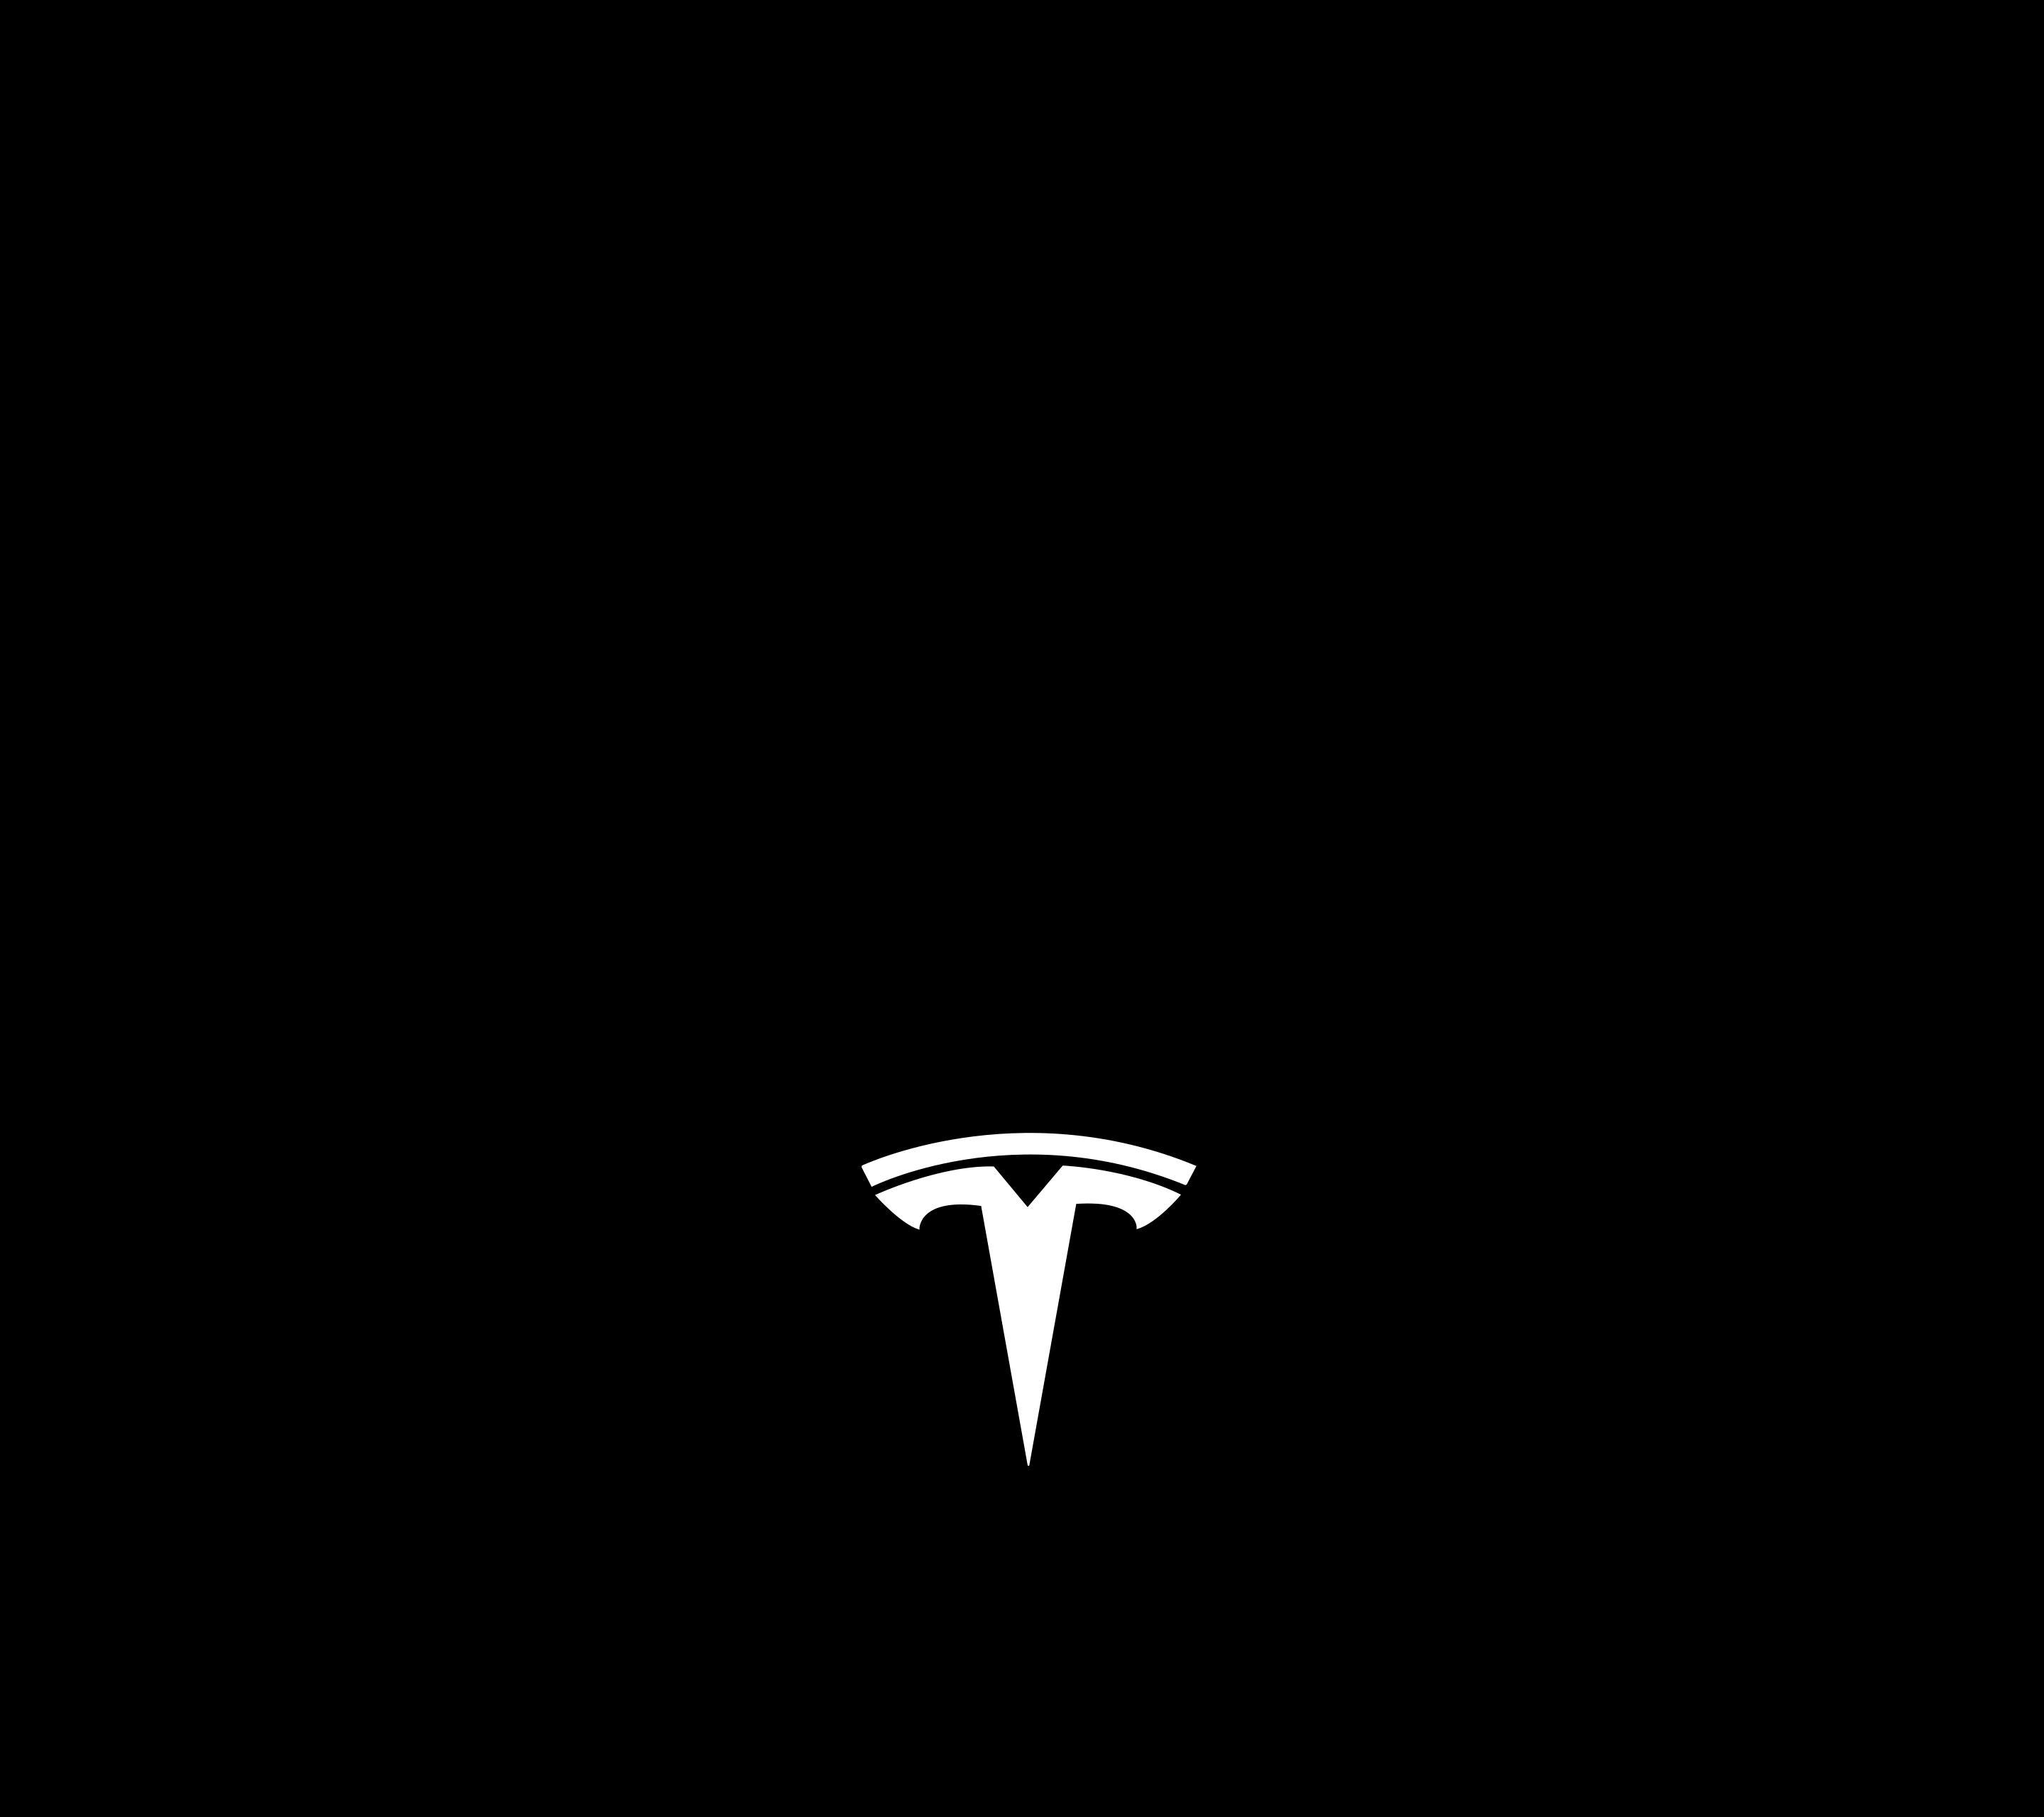 Tesla Logo Black Wallpaper Free Tesla Logo Black Background